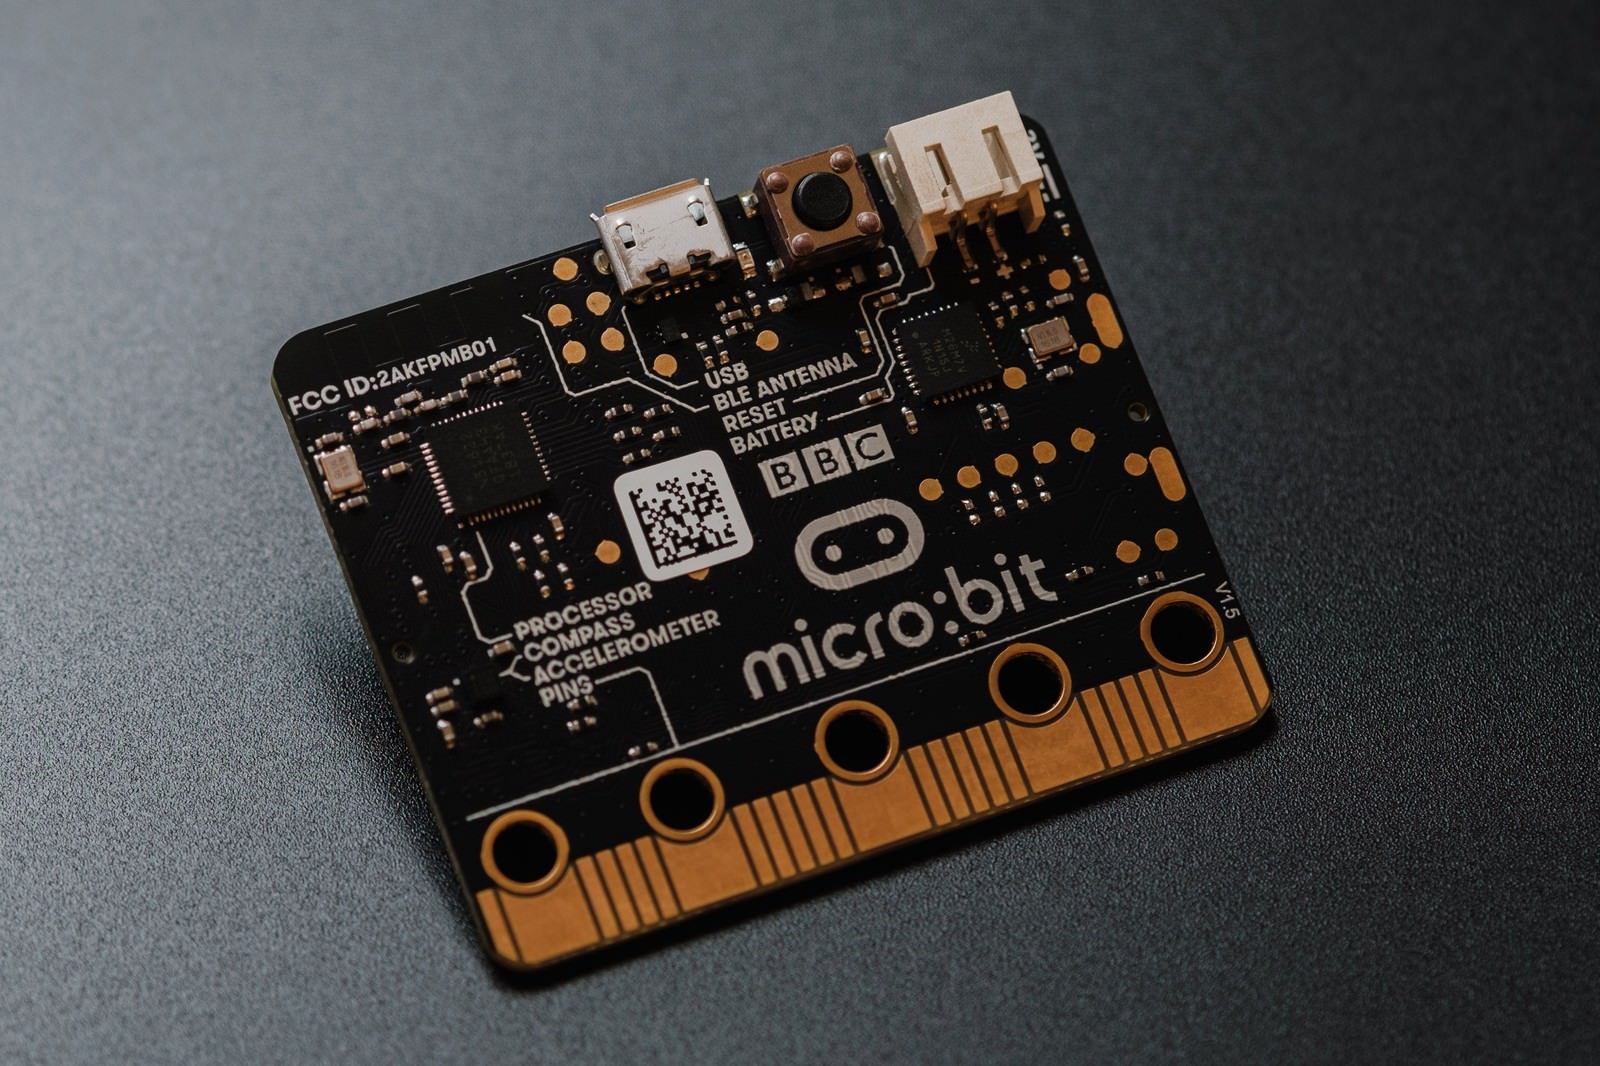 「micro bitの電子部品」の写真